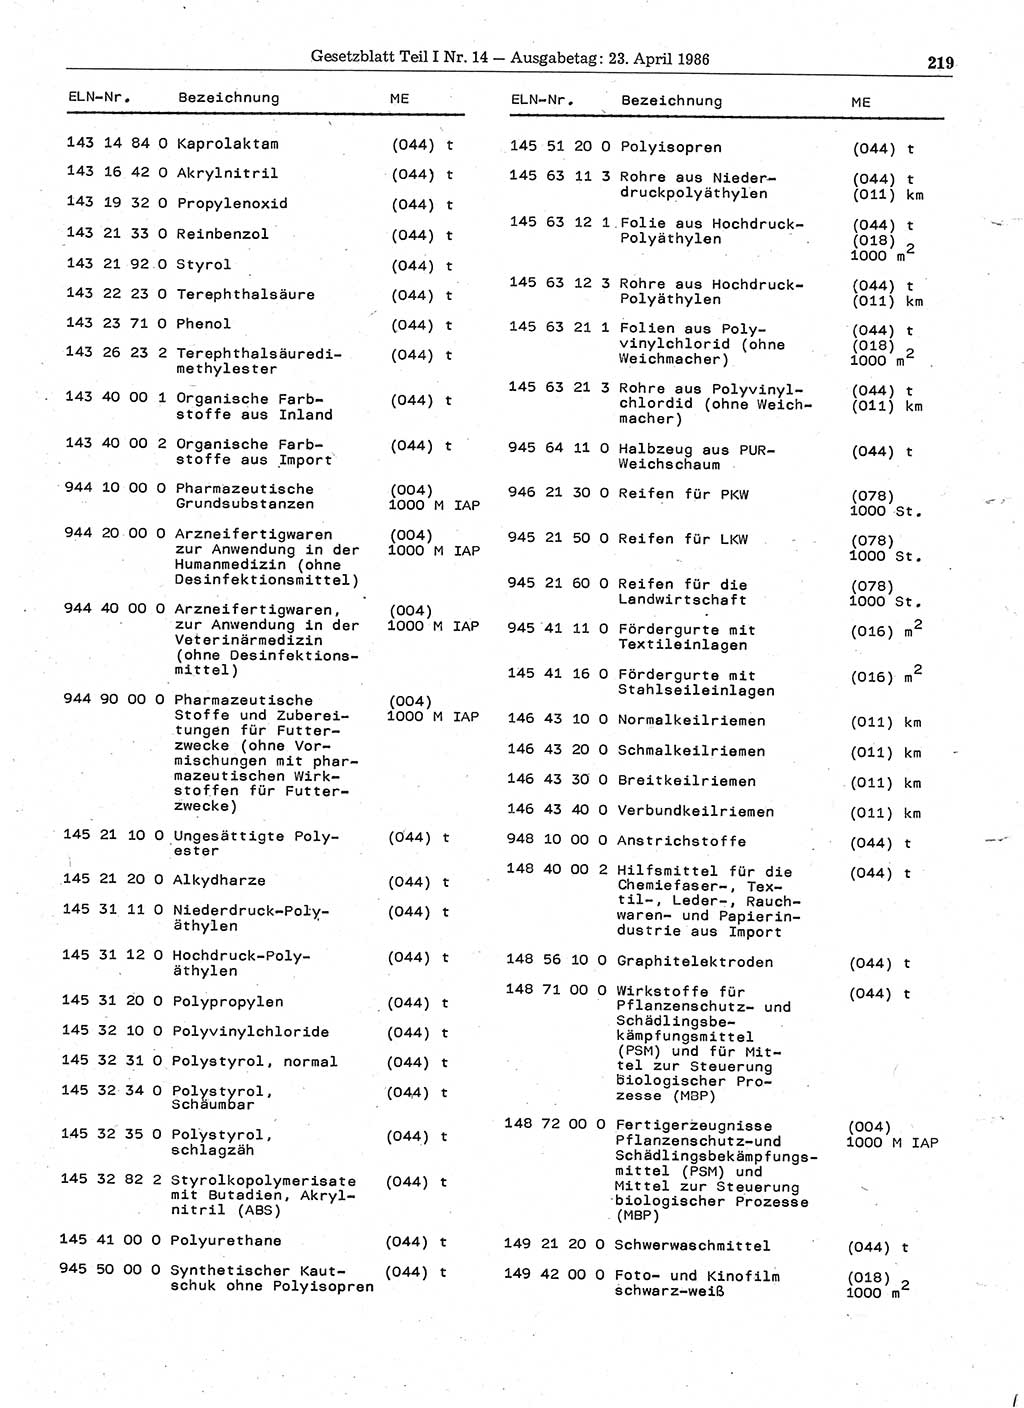 Gesetzblatt (GBl.) der Deutschen Demokratischen Republik (DDR) Teil Ⅰ 1986, Seite 219 (GBl. DDR Ⅰ 1986, S. 219)